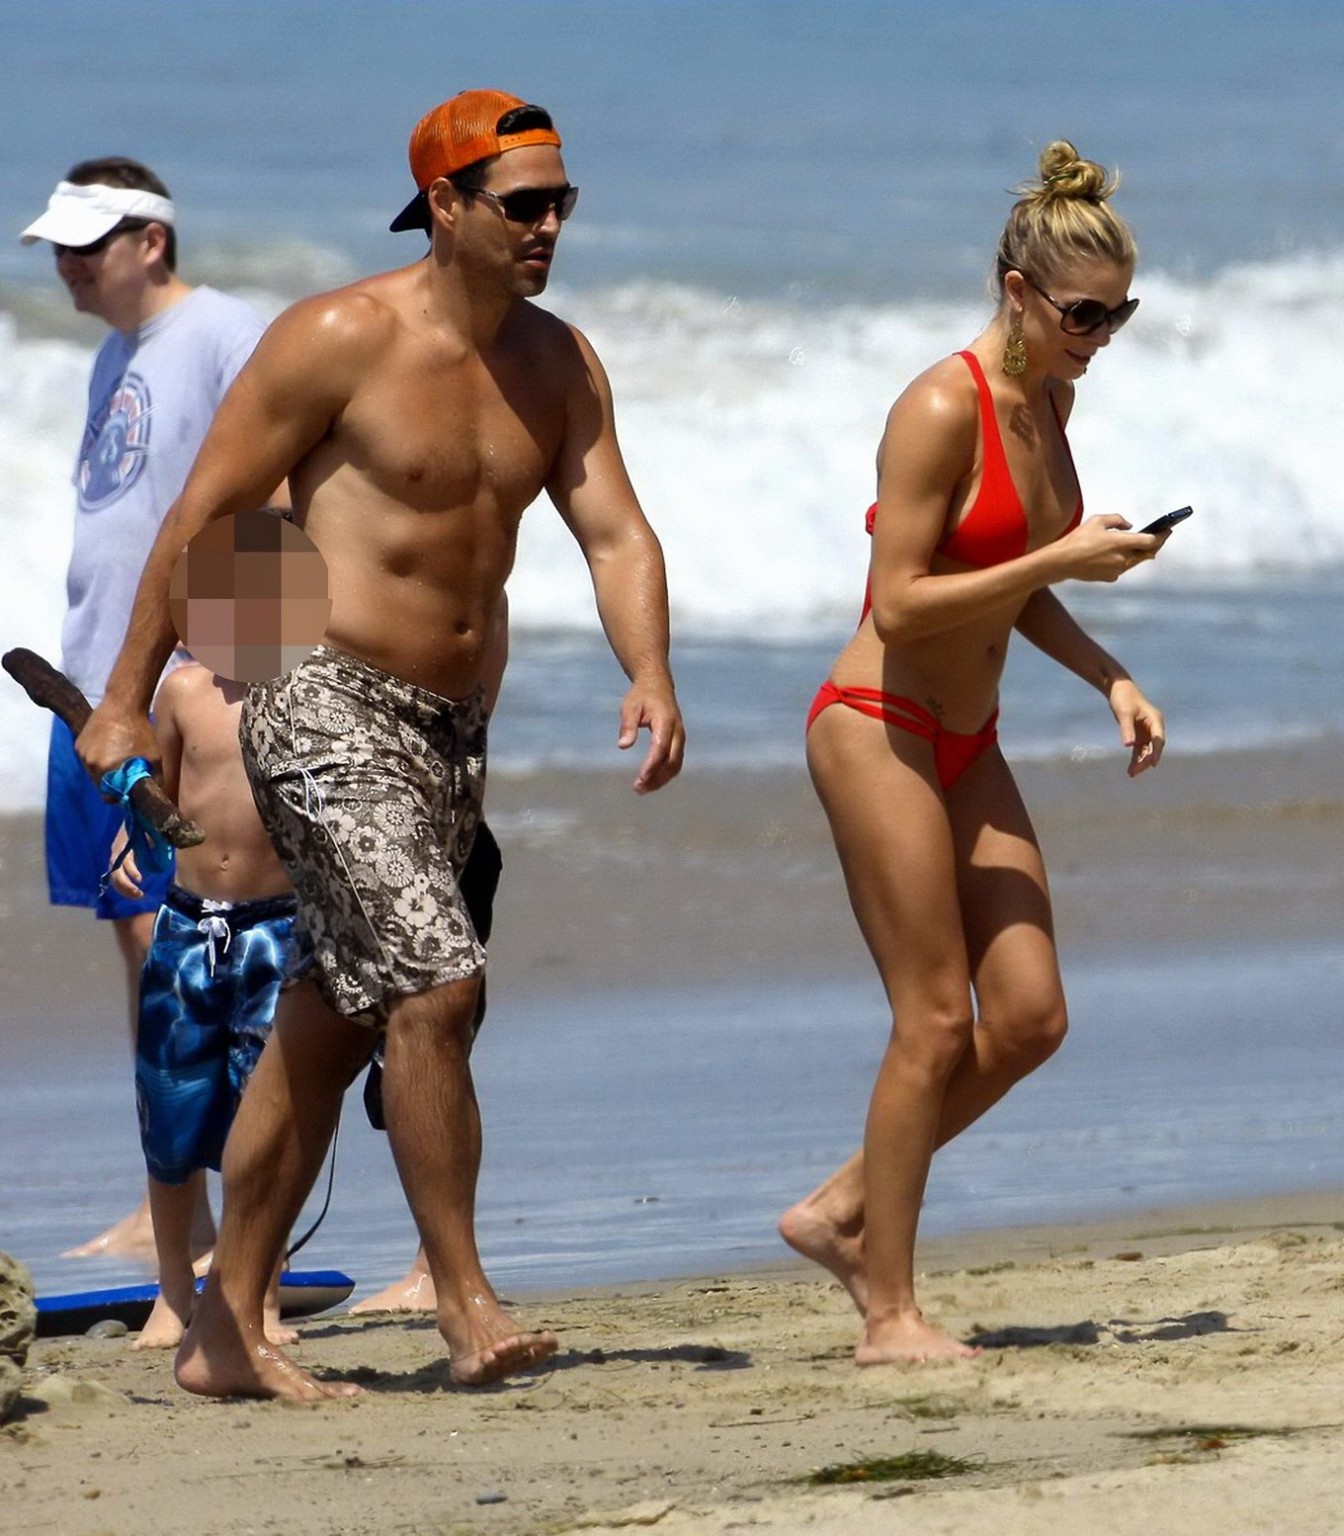 LeAnn Rimes wearing skimpy red bikini on Malibu Beach #75297645